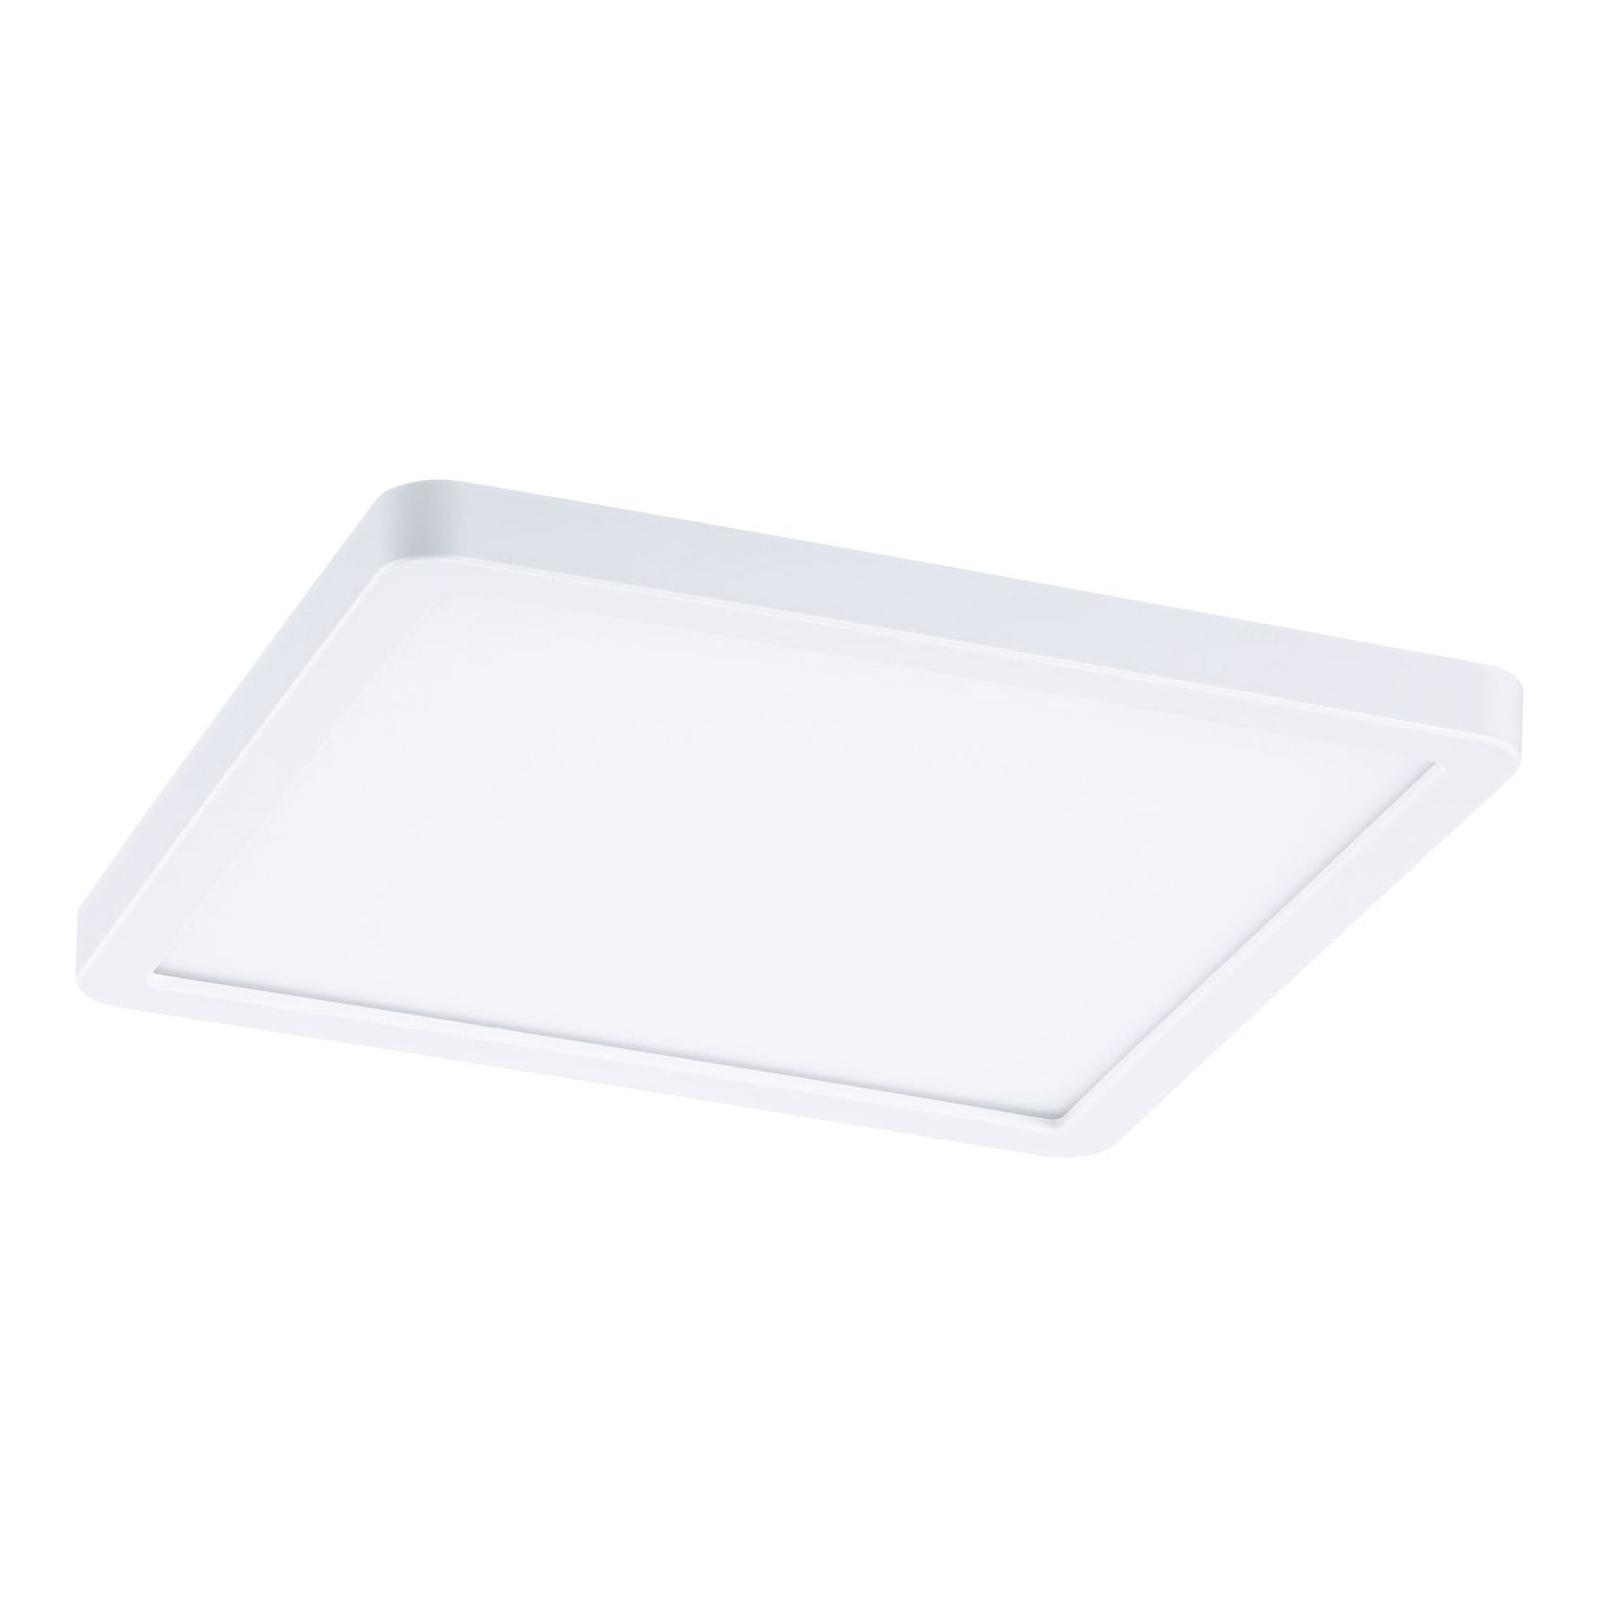 Paulmann Areo LED panel 4000K angular 17.5cm white